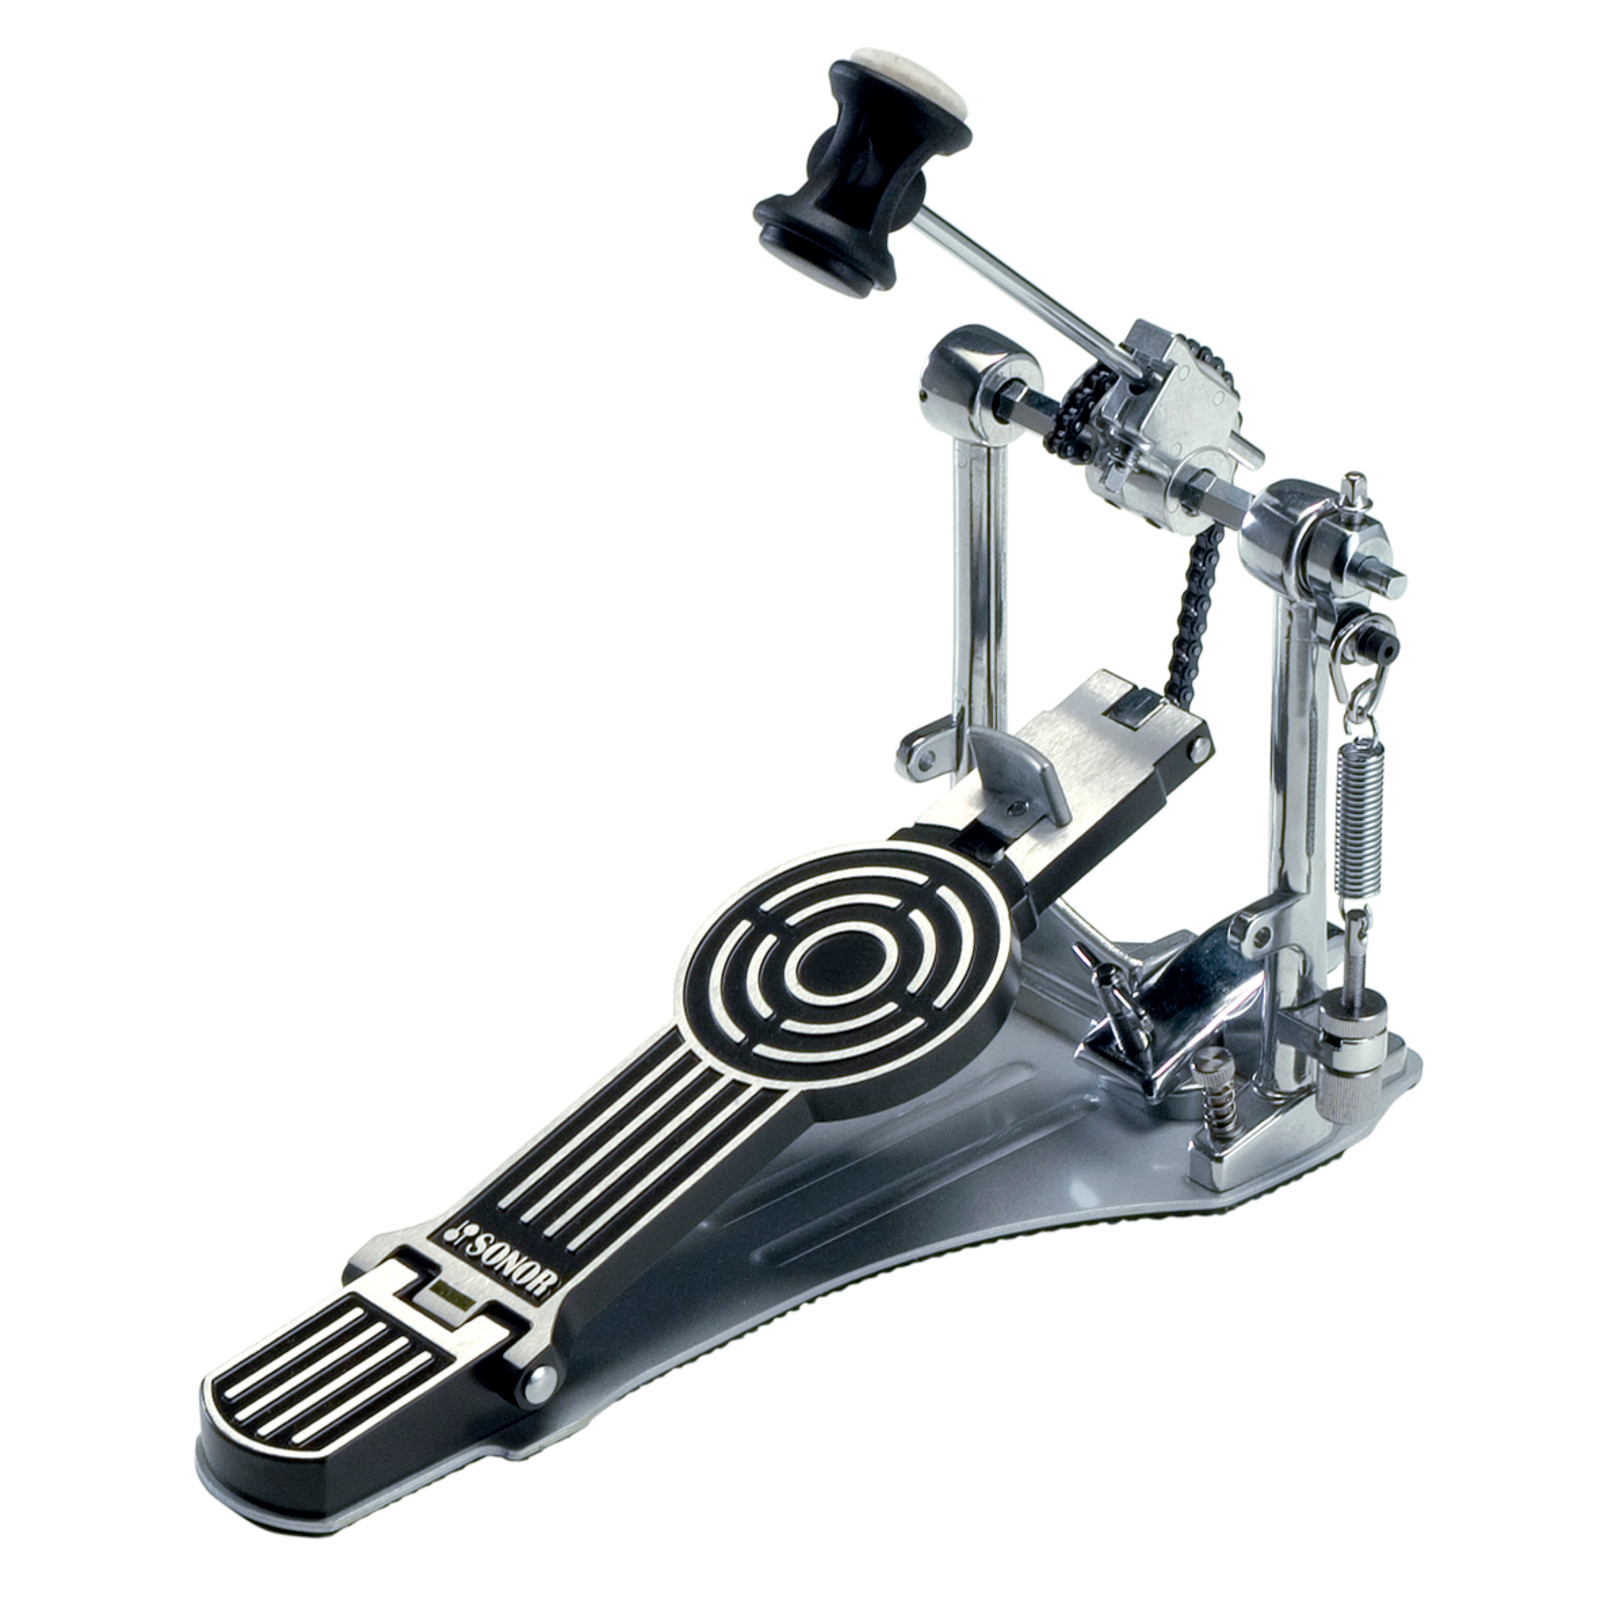 Для отработки техники правой ноги понадобится педаль для бас-барабана